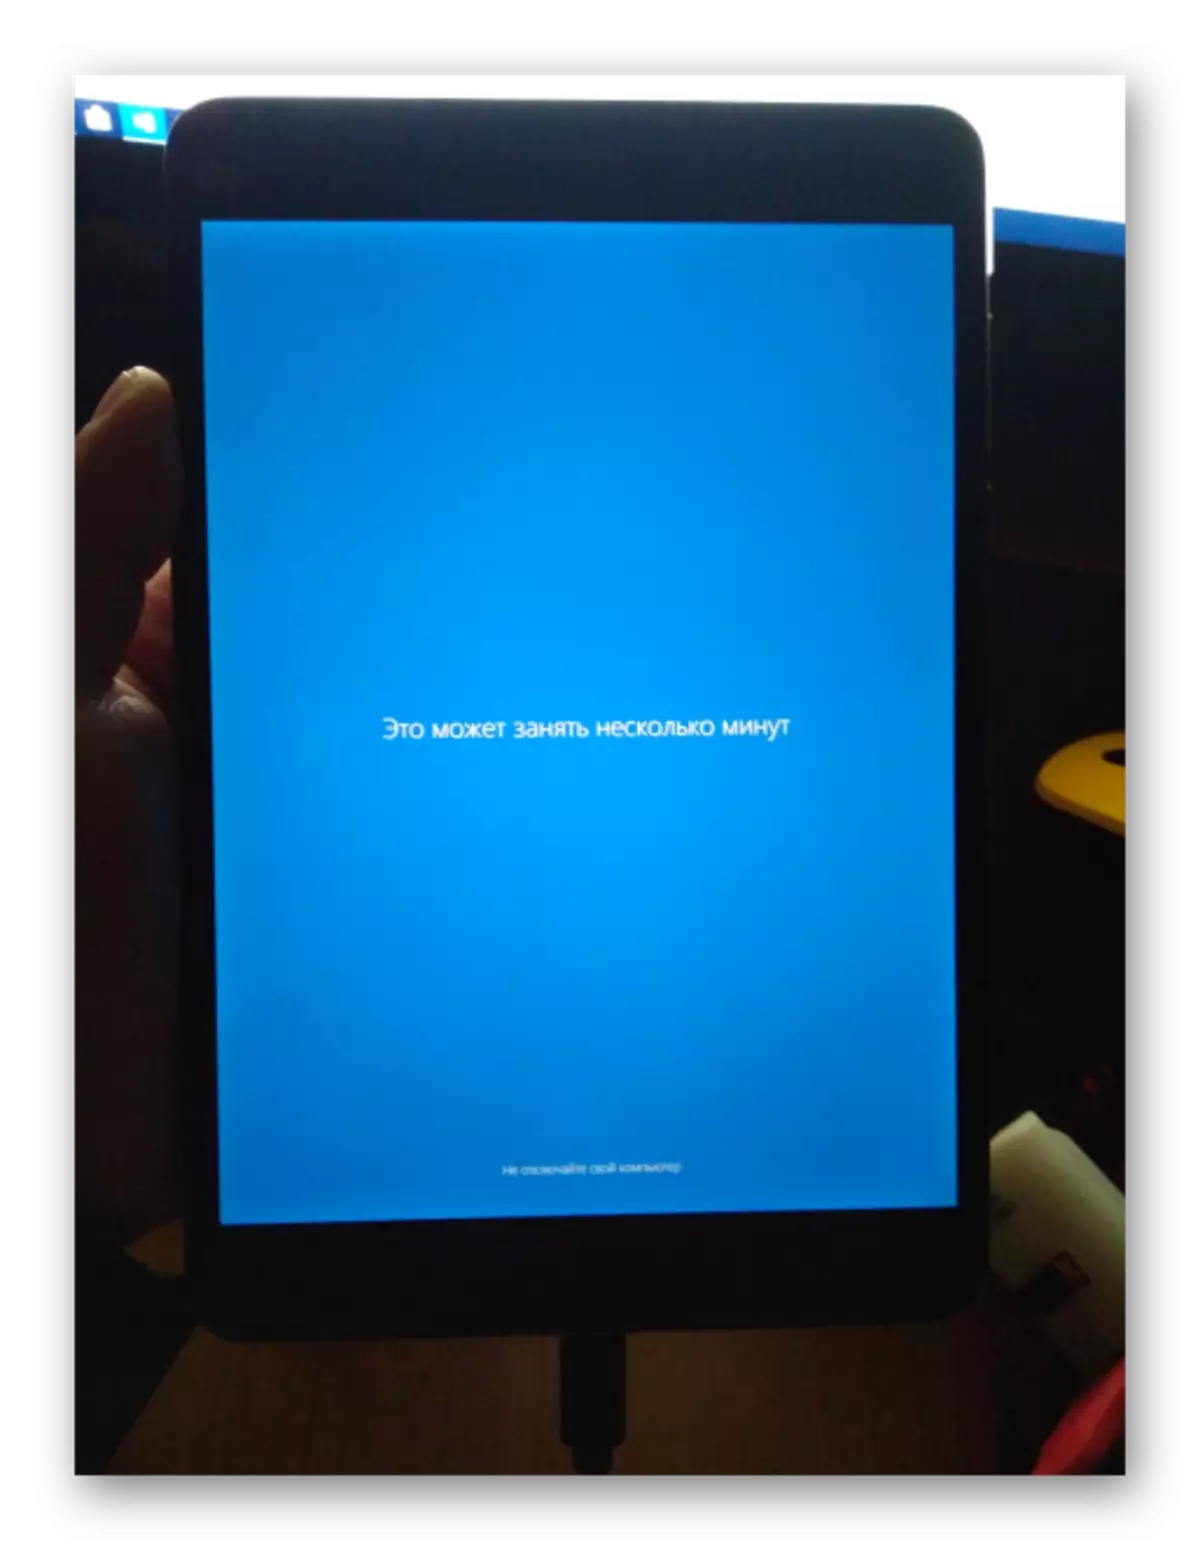 Xiaomi Mipad 2 Gukoresha Windows 10 nyuma yo kwishyiriraho